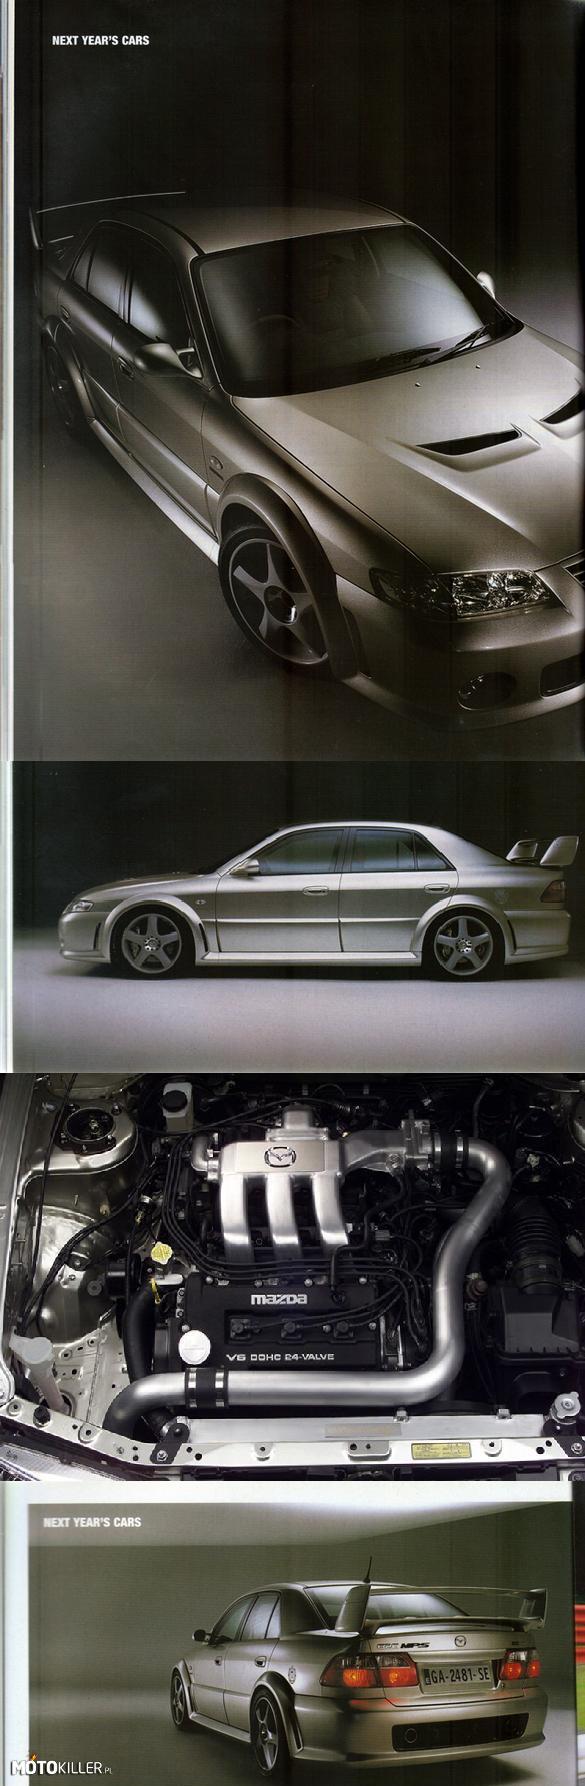 Mazda 626 (Capella) MPS (Prototyp) – Większość kojarzy Mazdę 626 (w Japonii sprzedawana jako Capella), to typowe, cenione, solidne auto z segmentu D, sprzedawane do 2002 i budowane w kilku wersjach nadwozia. Jednak może nie każdemu znany jest fakt, że w 2000 roku Mazda stworzyła prototyp w wersji MPS (Mazda Performance Series).

Samochód ten, teoretycznie miał być konkurentem dla japońskich potentatów AWD, czyli Subaru (Impreza WRX STi), Mitsubishi (Lancer Evolution) oraz Nissana (Skyline GT-R), natomiast jego celem w Europie miało być np. Audi S4. 

Takie towarzystwo wymaga odpowiedniego poziomu, no więc Mazda wyposażyła 626 MPS w napęd na cztery koła oraz 2.5-litrowy silnik V6 (KL-ZE) z dwiema turbosprężarkami, co dawało moc 280 KM (oczywiście ograniczoną przez znane japońskie limity silników) oraz 392 Nm momentu obrotowego. 